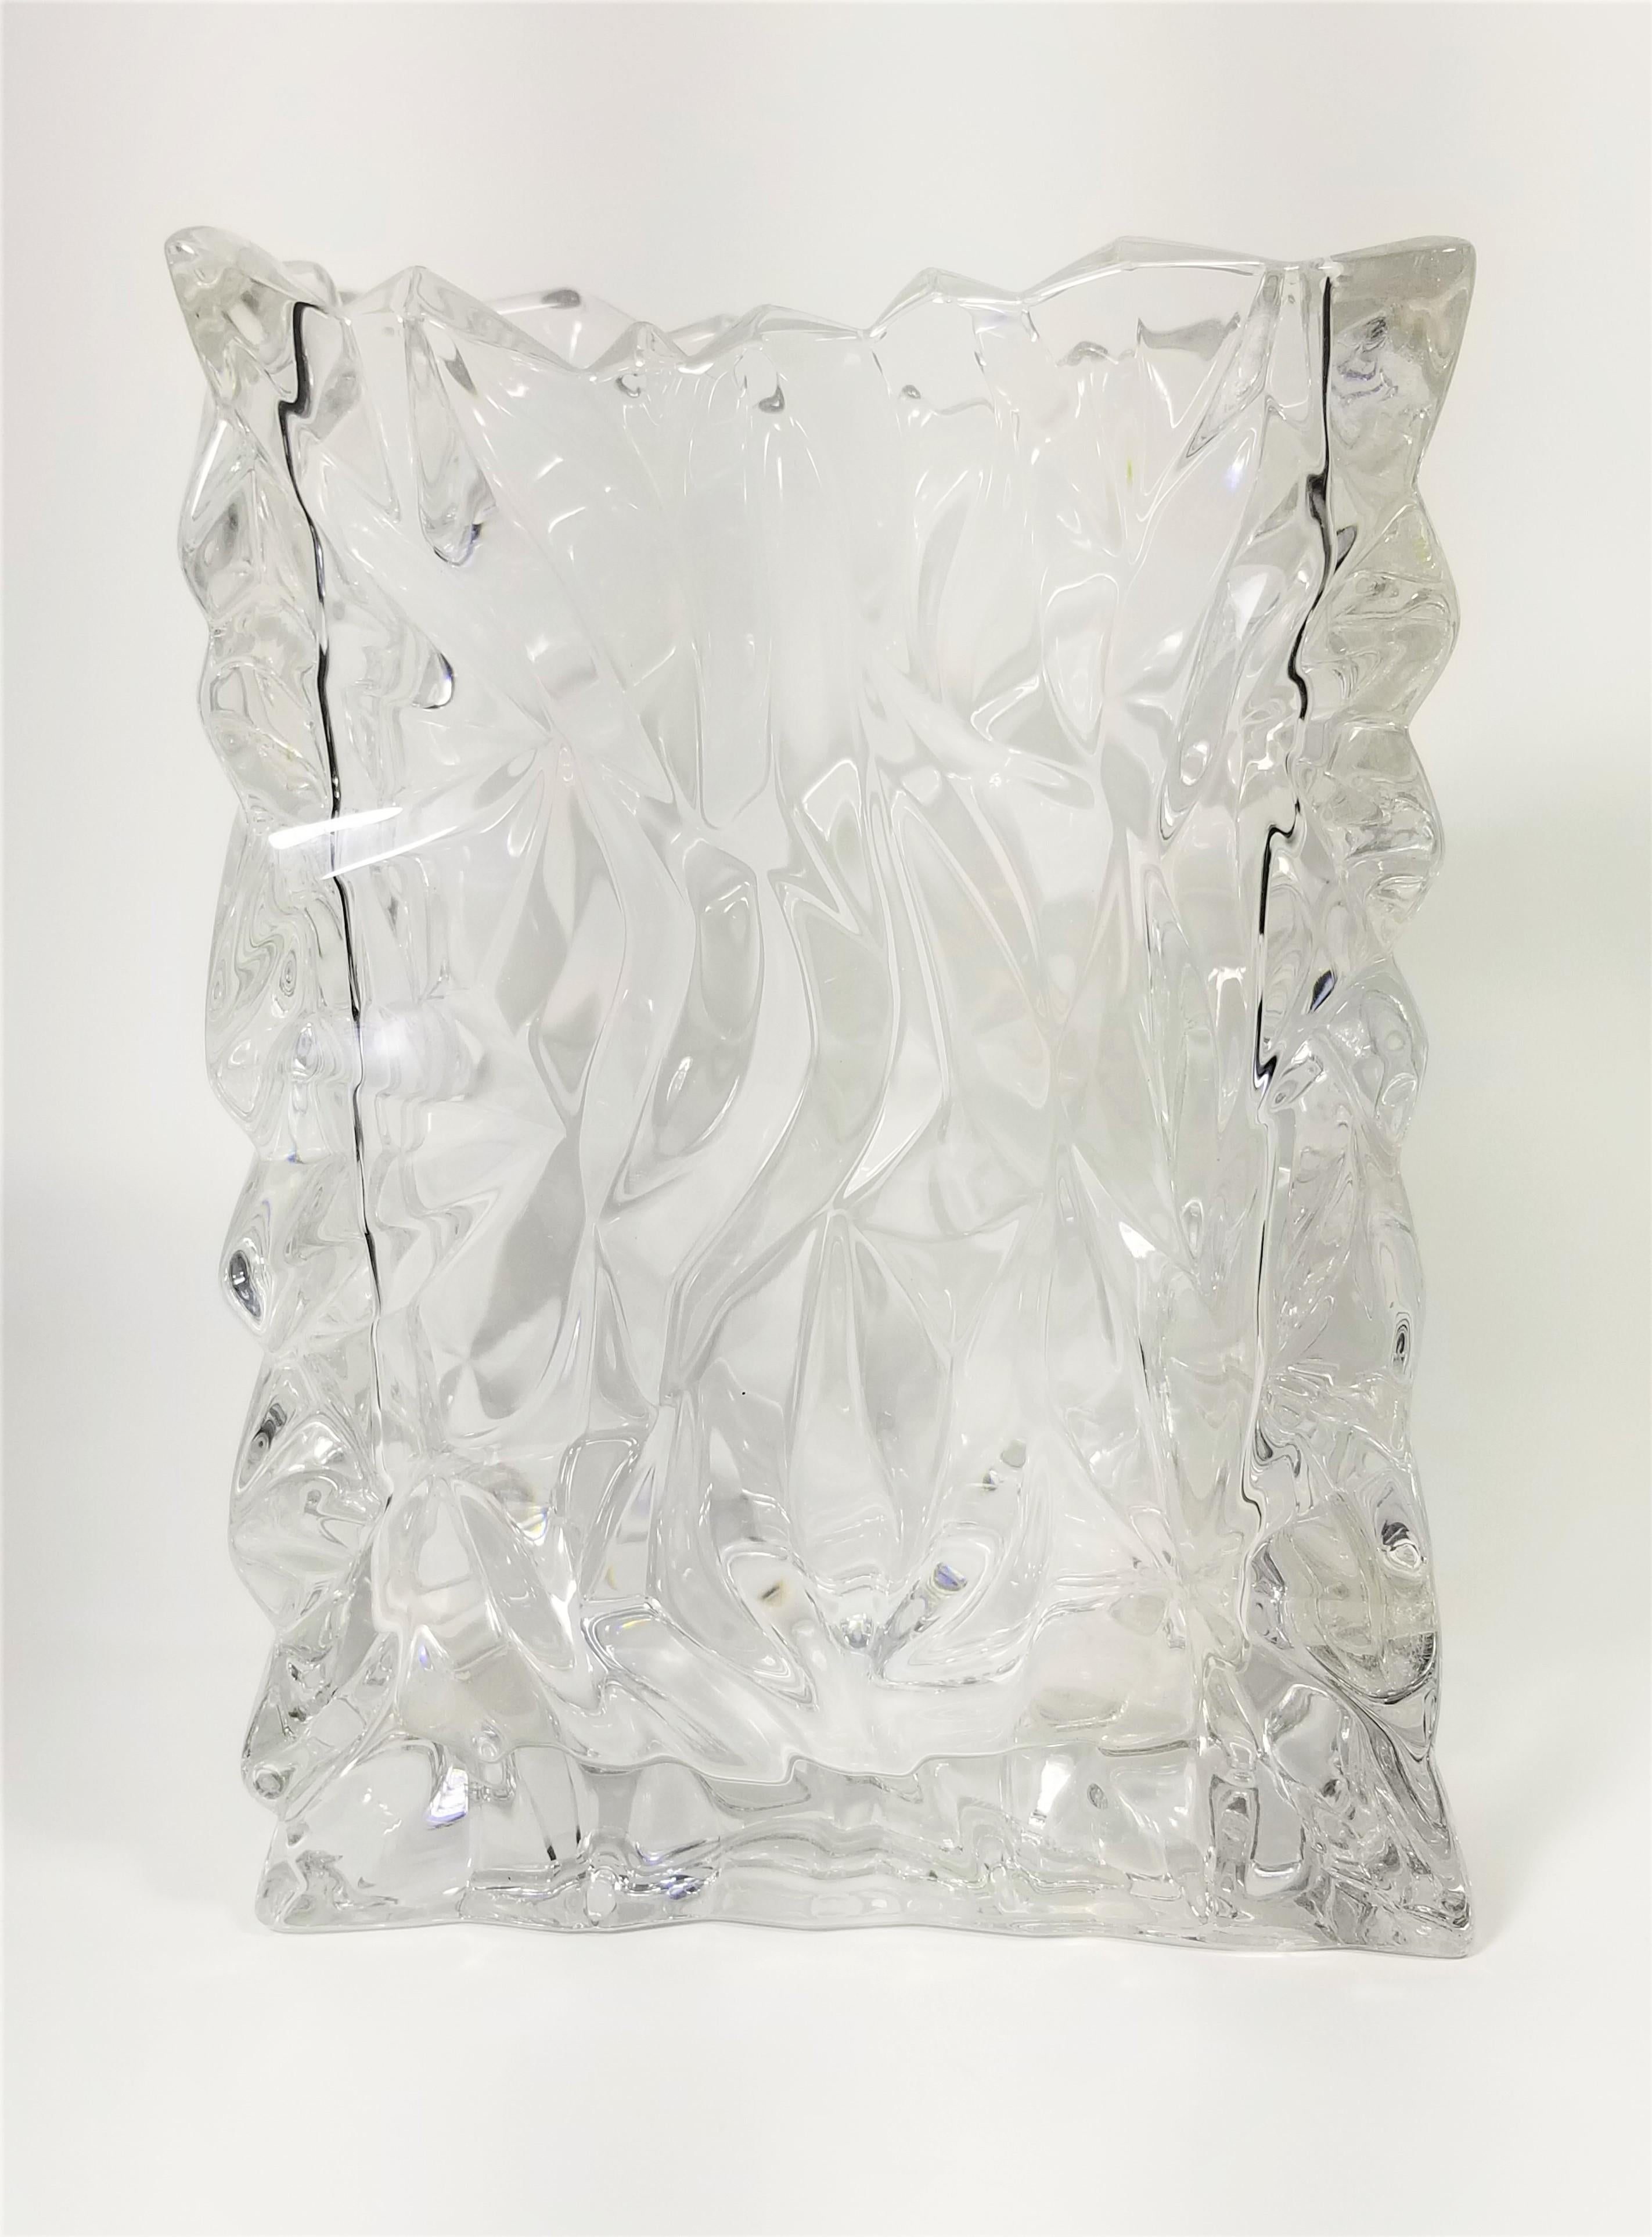 Rosenthal Crystal Vase Brutalist Design Made in Germany For Sale 2